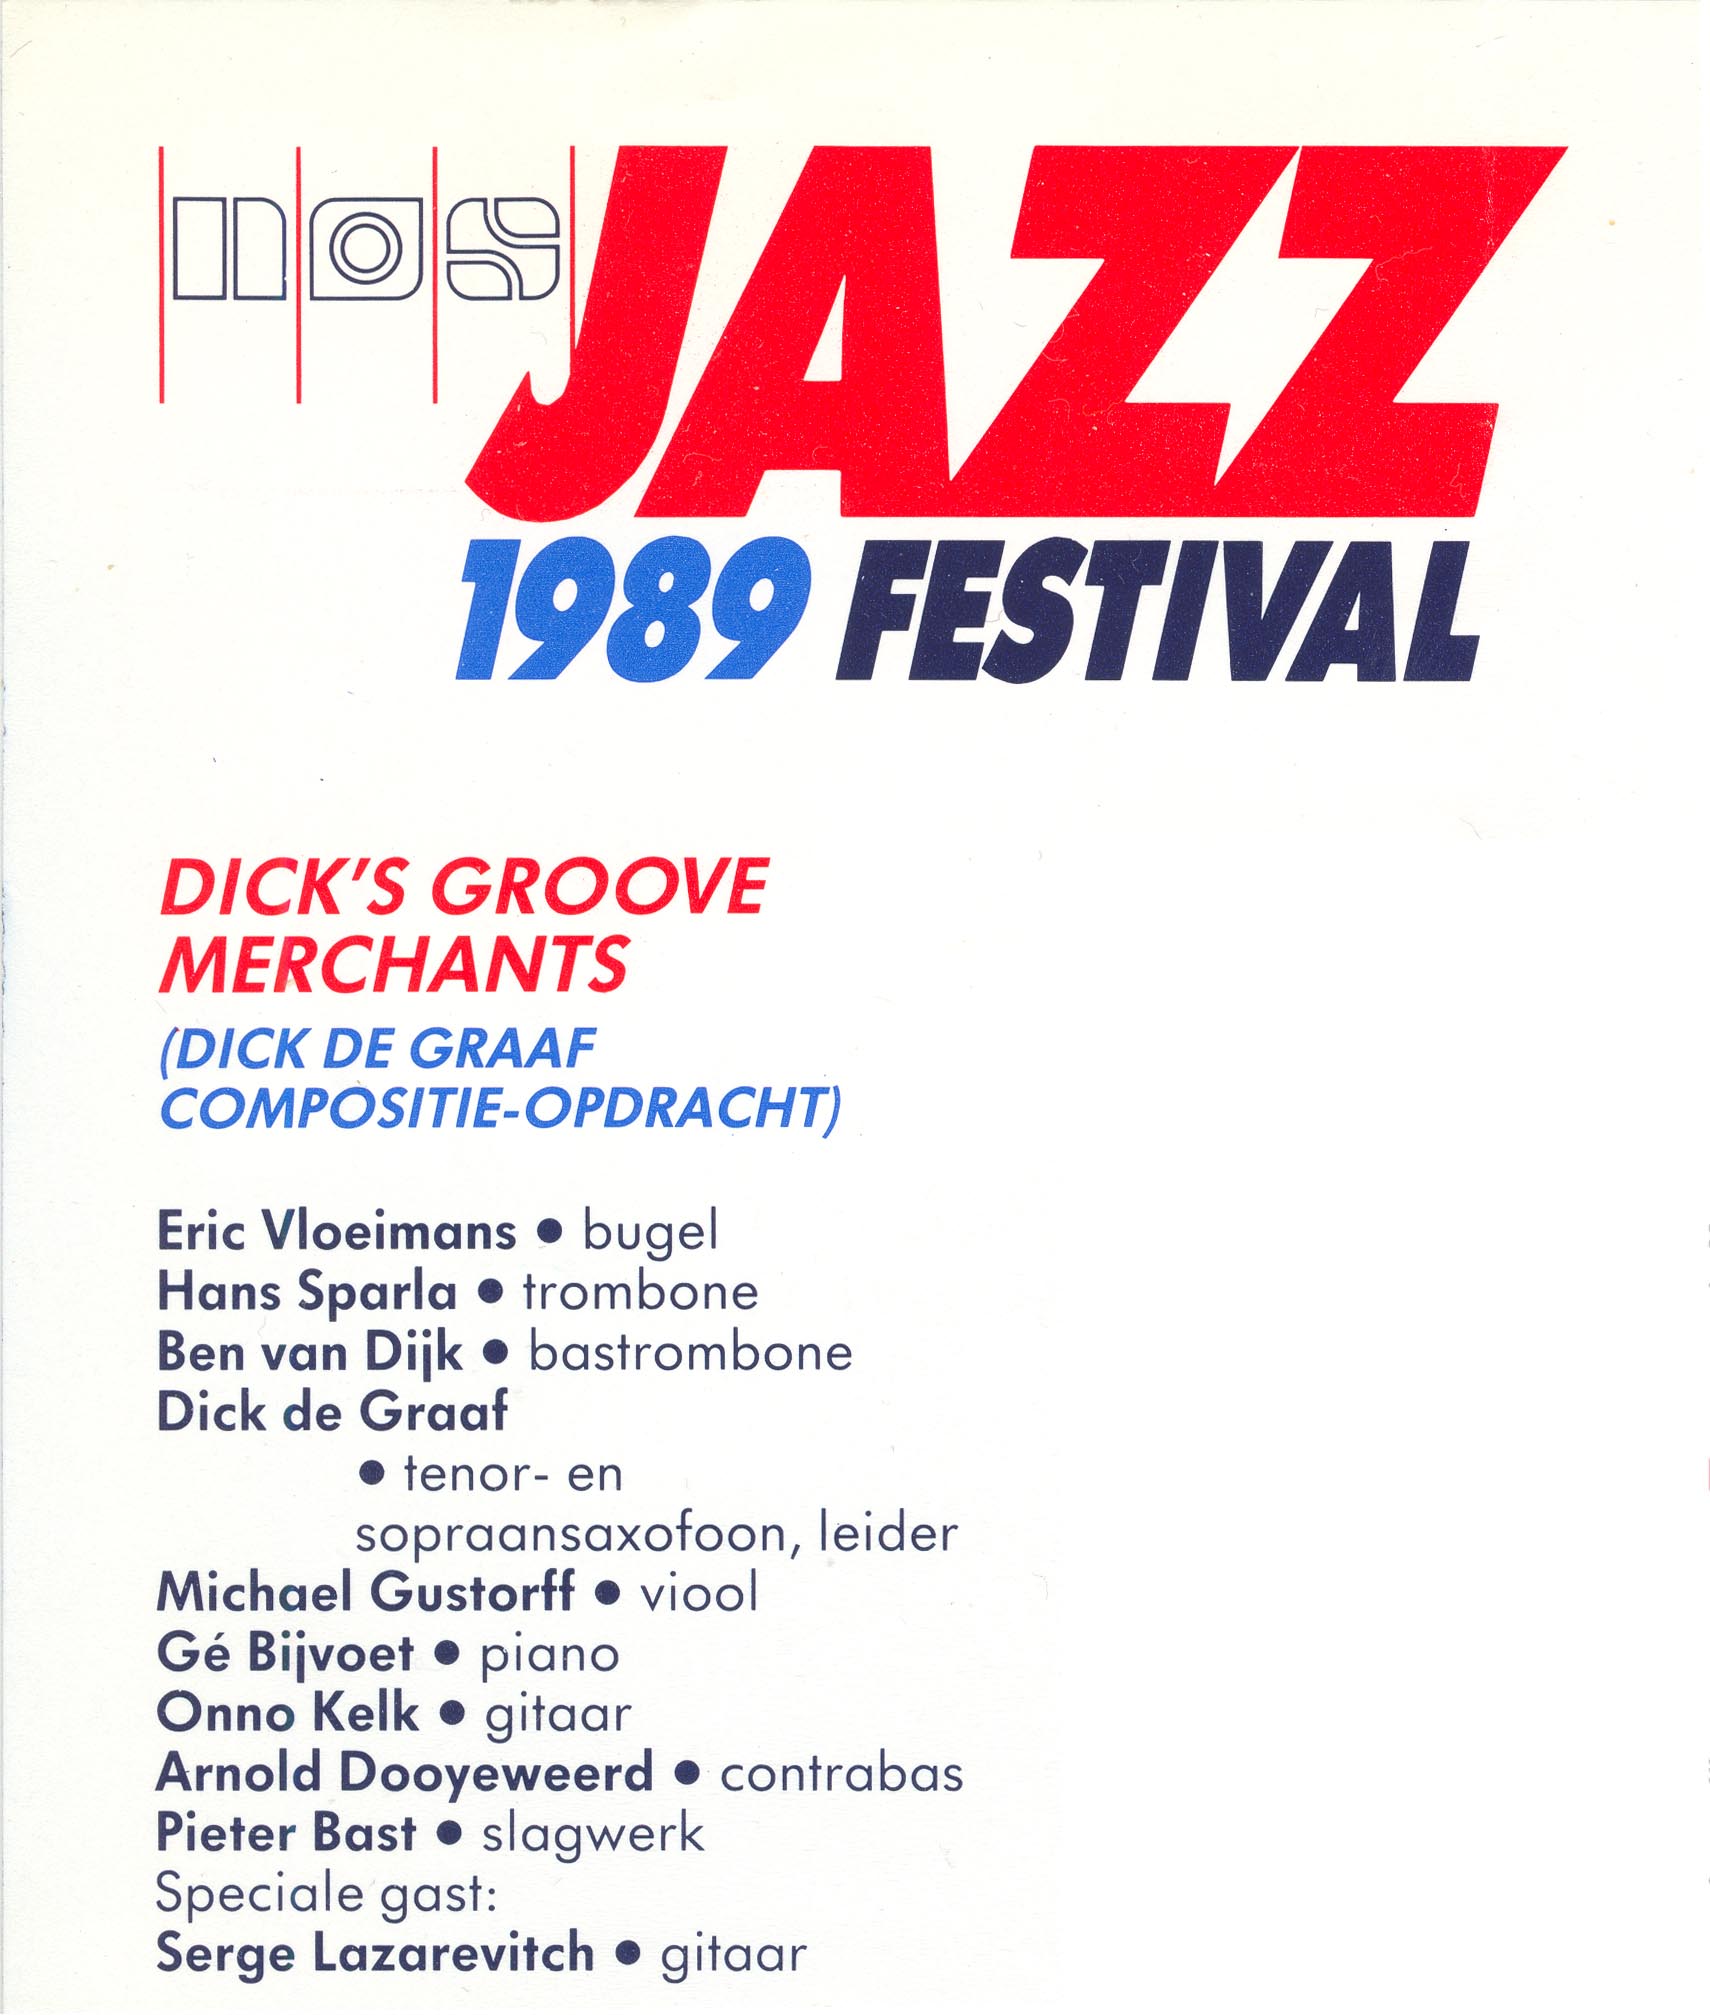 9) NOS Jazzfestival 1989